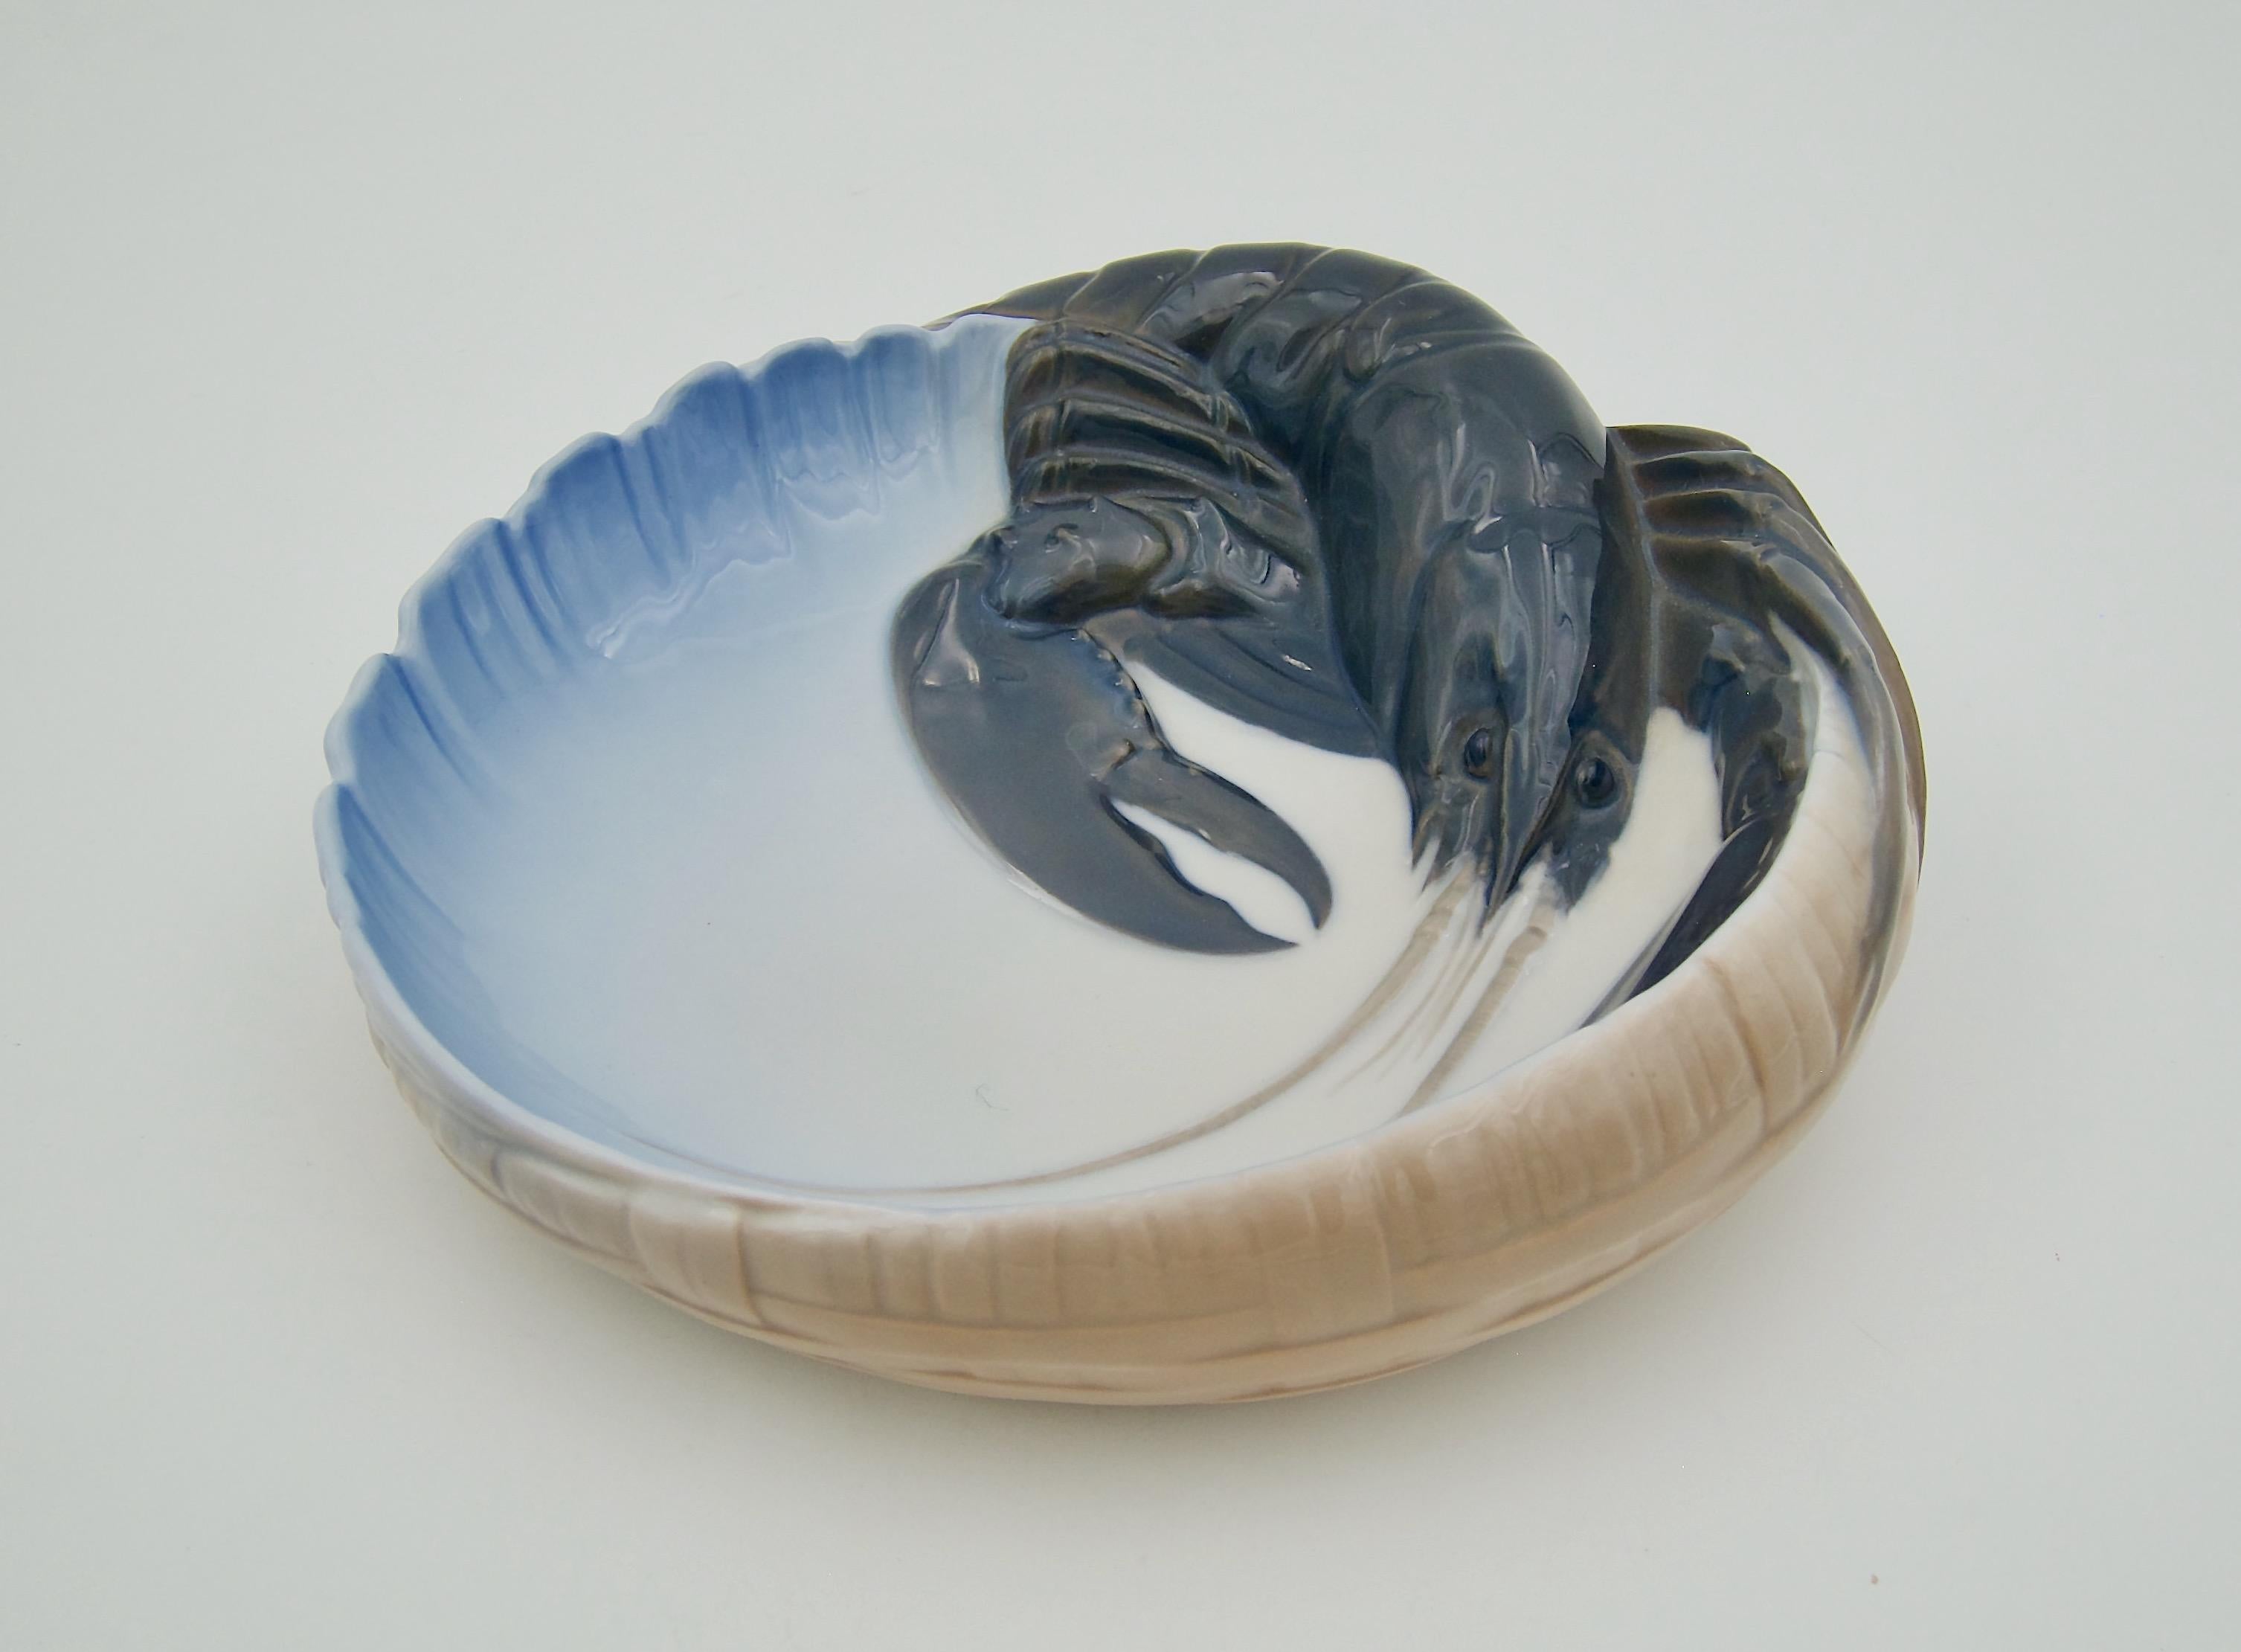 Danish Hand-Painted Porcelain Lobster Bowl from Royal Copenhagen of Denmark